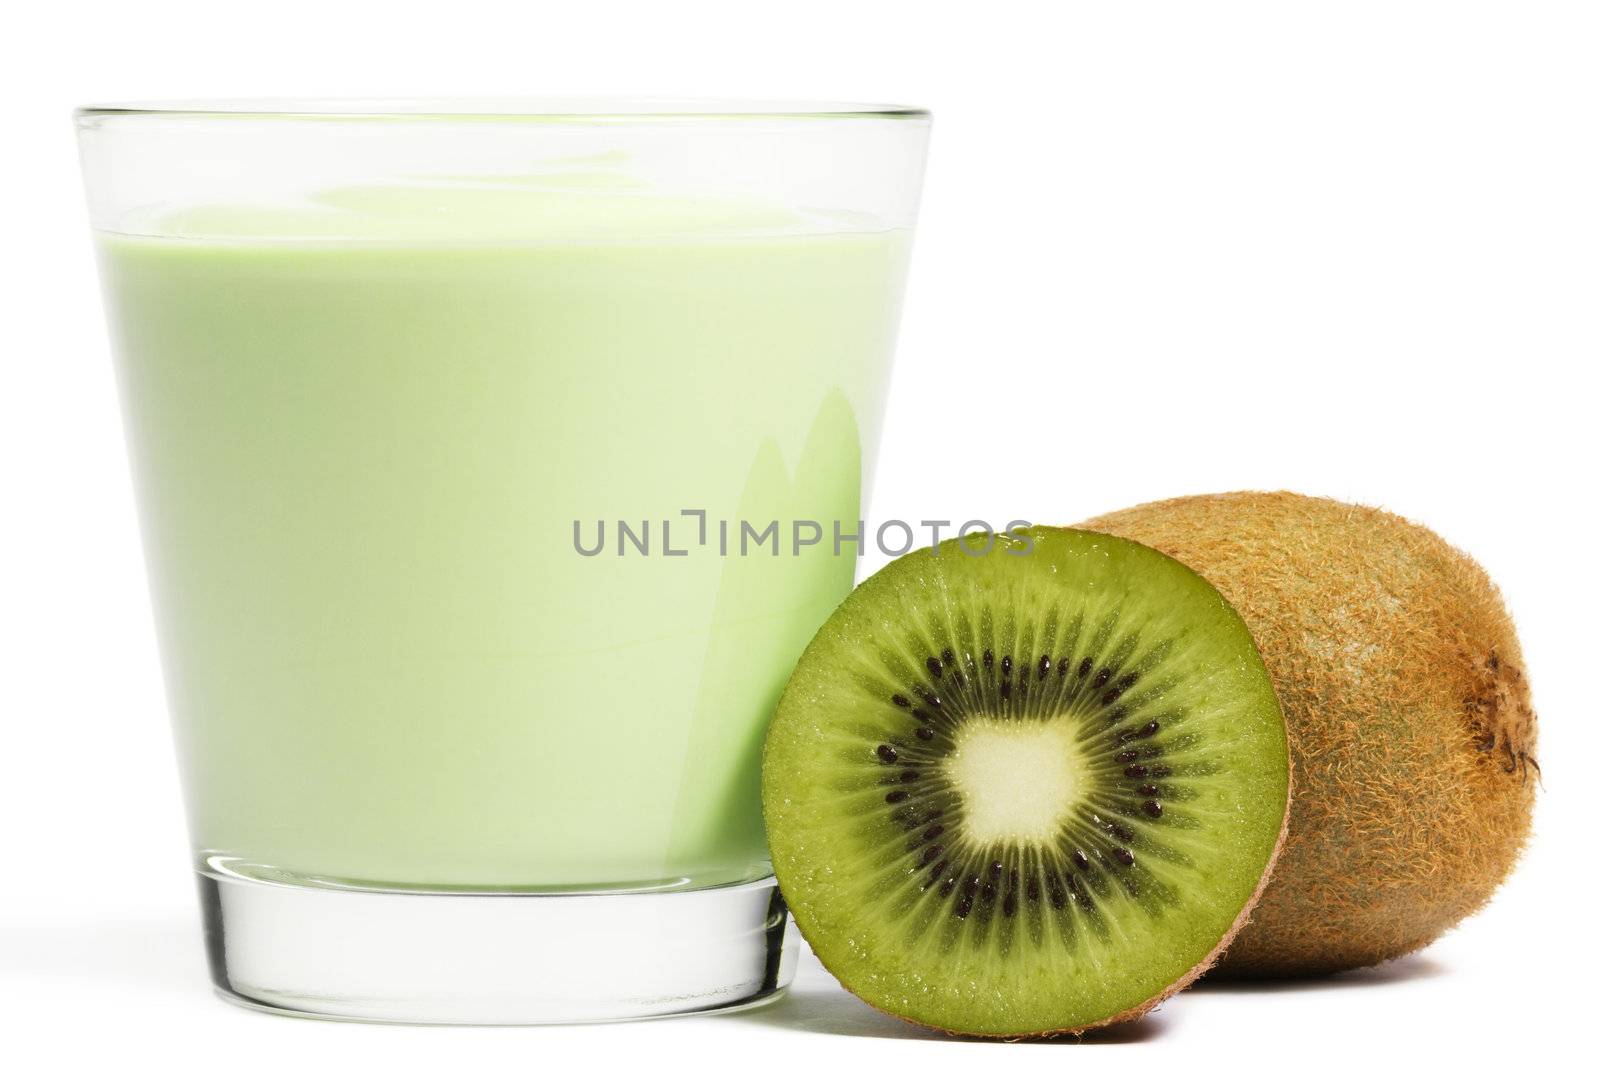 milkshake with a kiwi and a half kiwifruit aside on white background